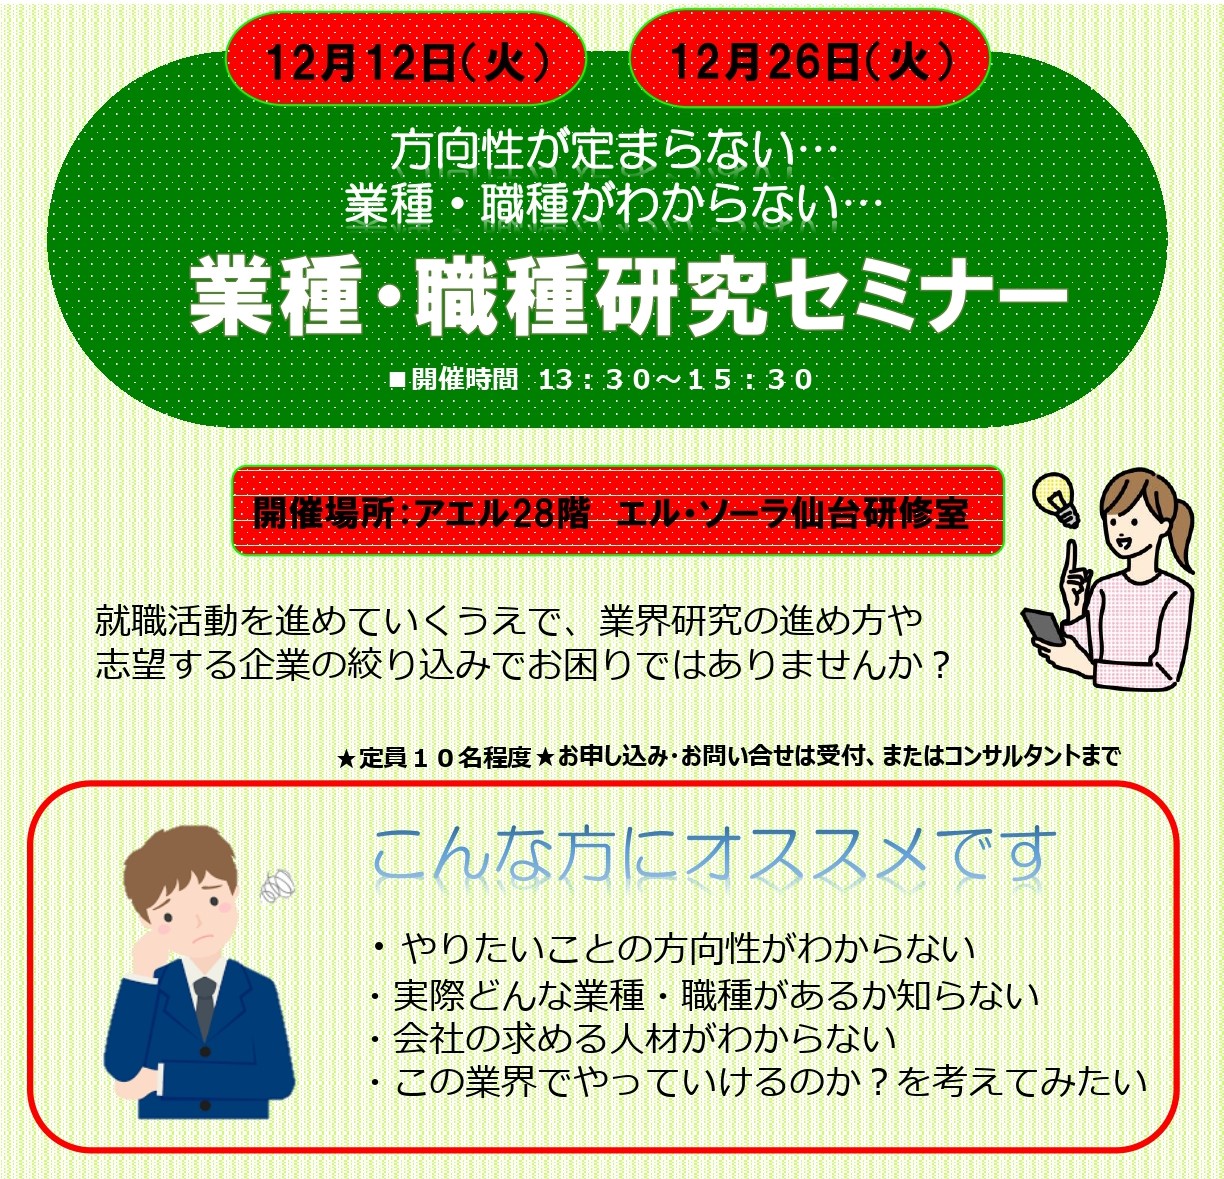 【ジョブカフェ】12/26 業種・職種研究セミナー